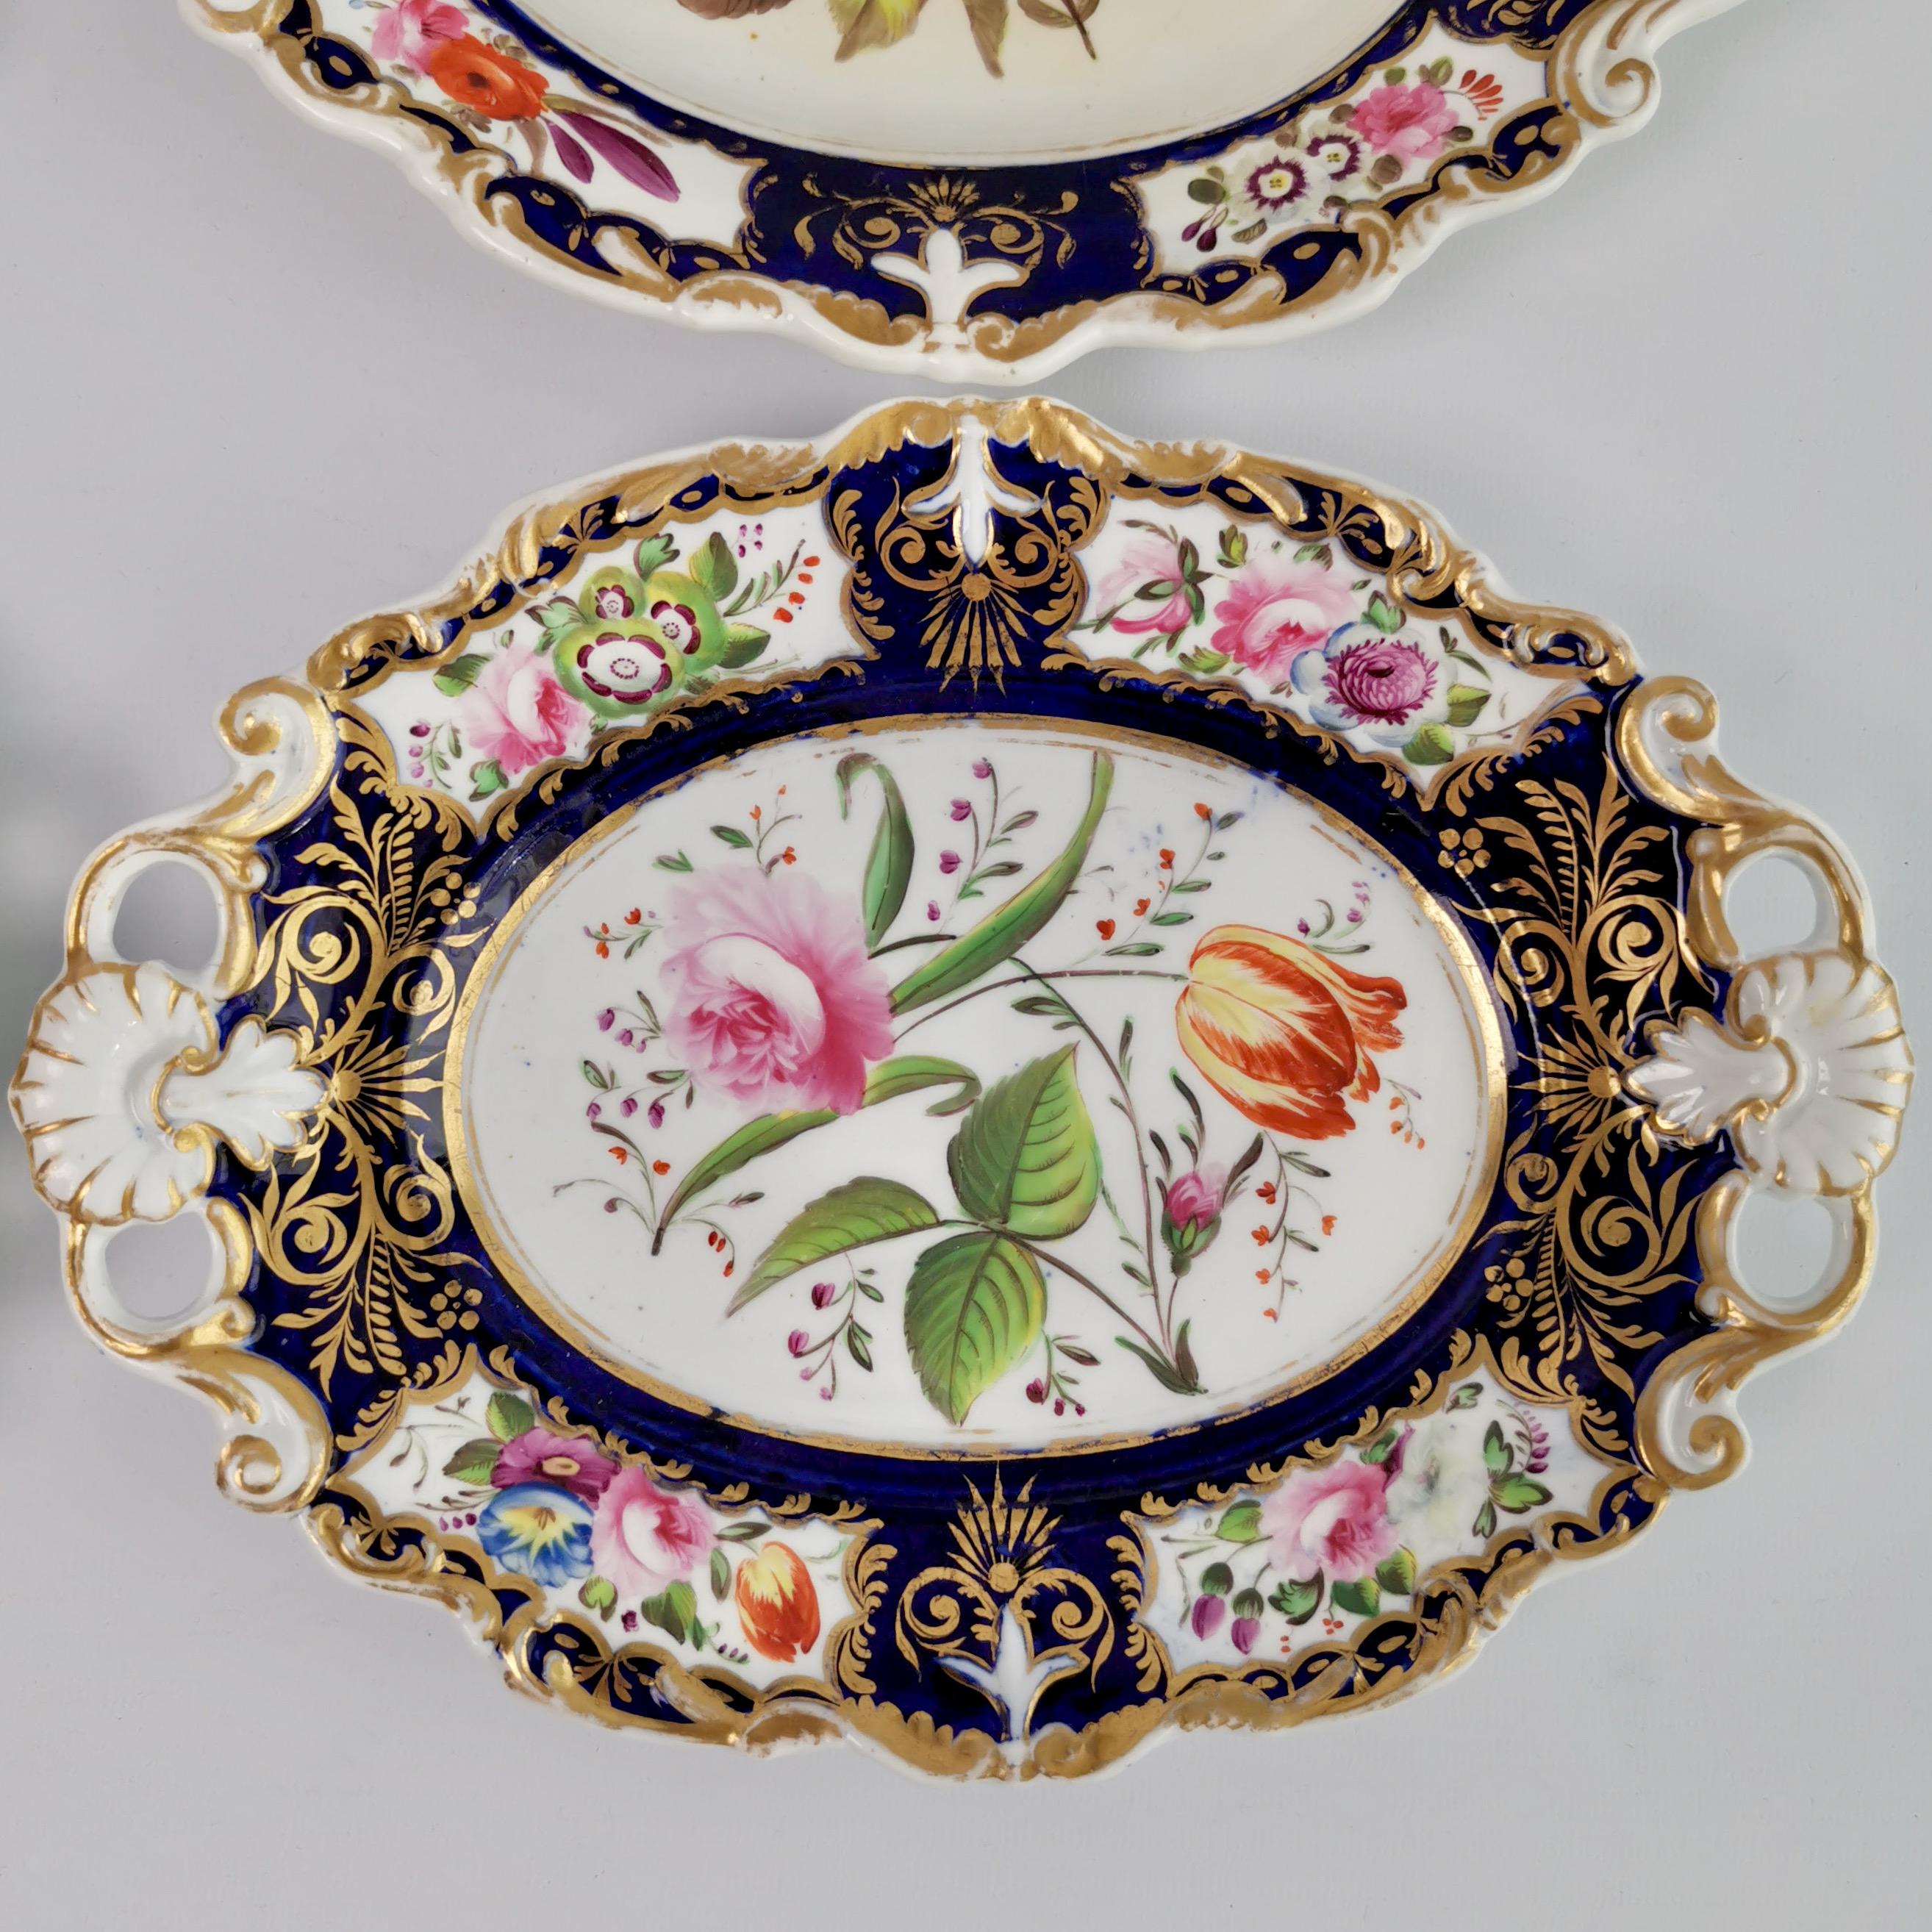 New Hall Porcelain Dessert Service, Cobalt Blue with Flowers, Regency 1824-1830 7